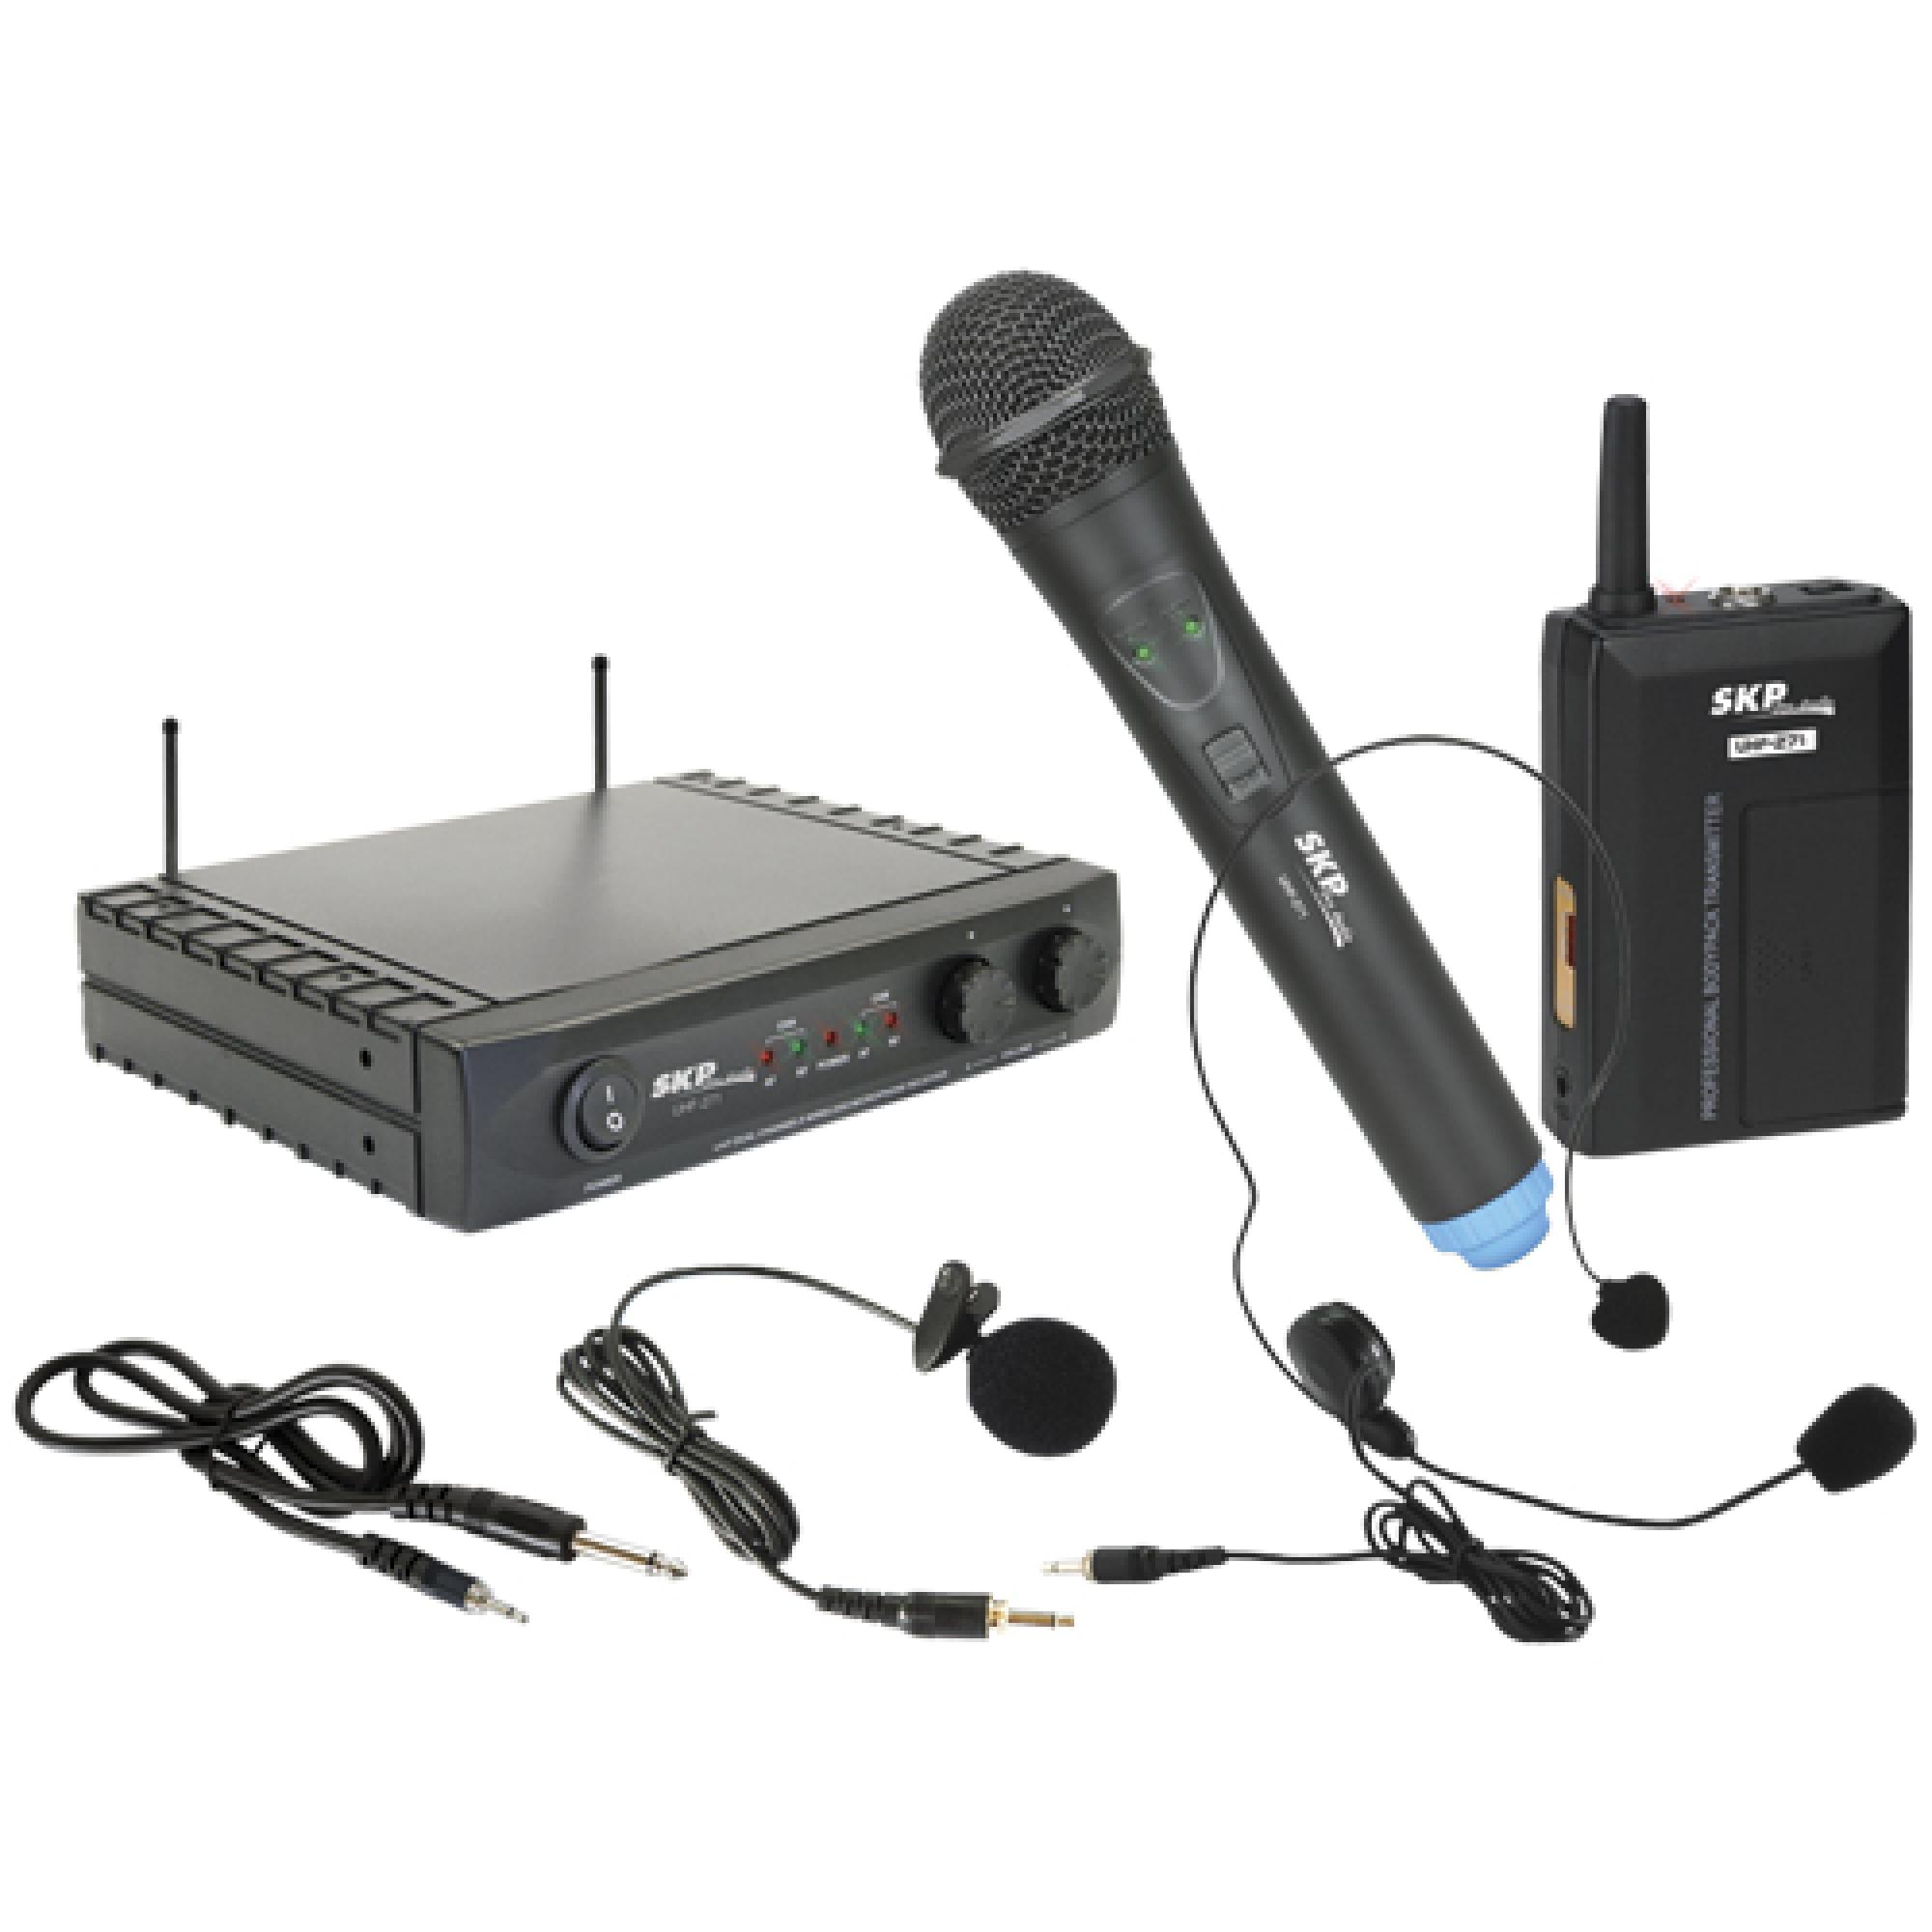 Беспроводной радиомикрофон. Pro Audio Wireless Mic. Радиосистема JTS in64r/in64th. PROAUDIO Mic беспроводные. Микрофон беспроводной Wireless Microphone коробка.